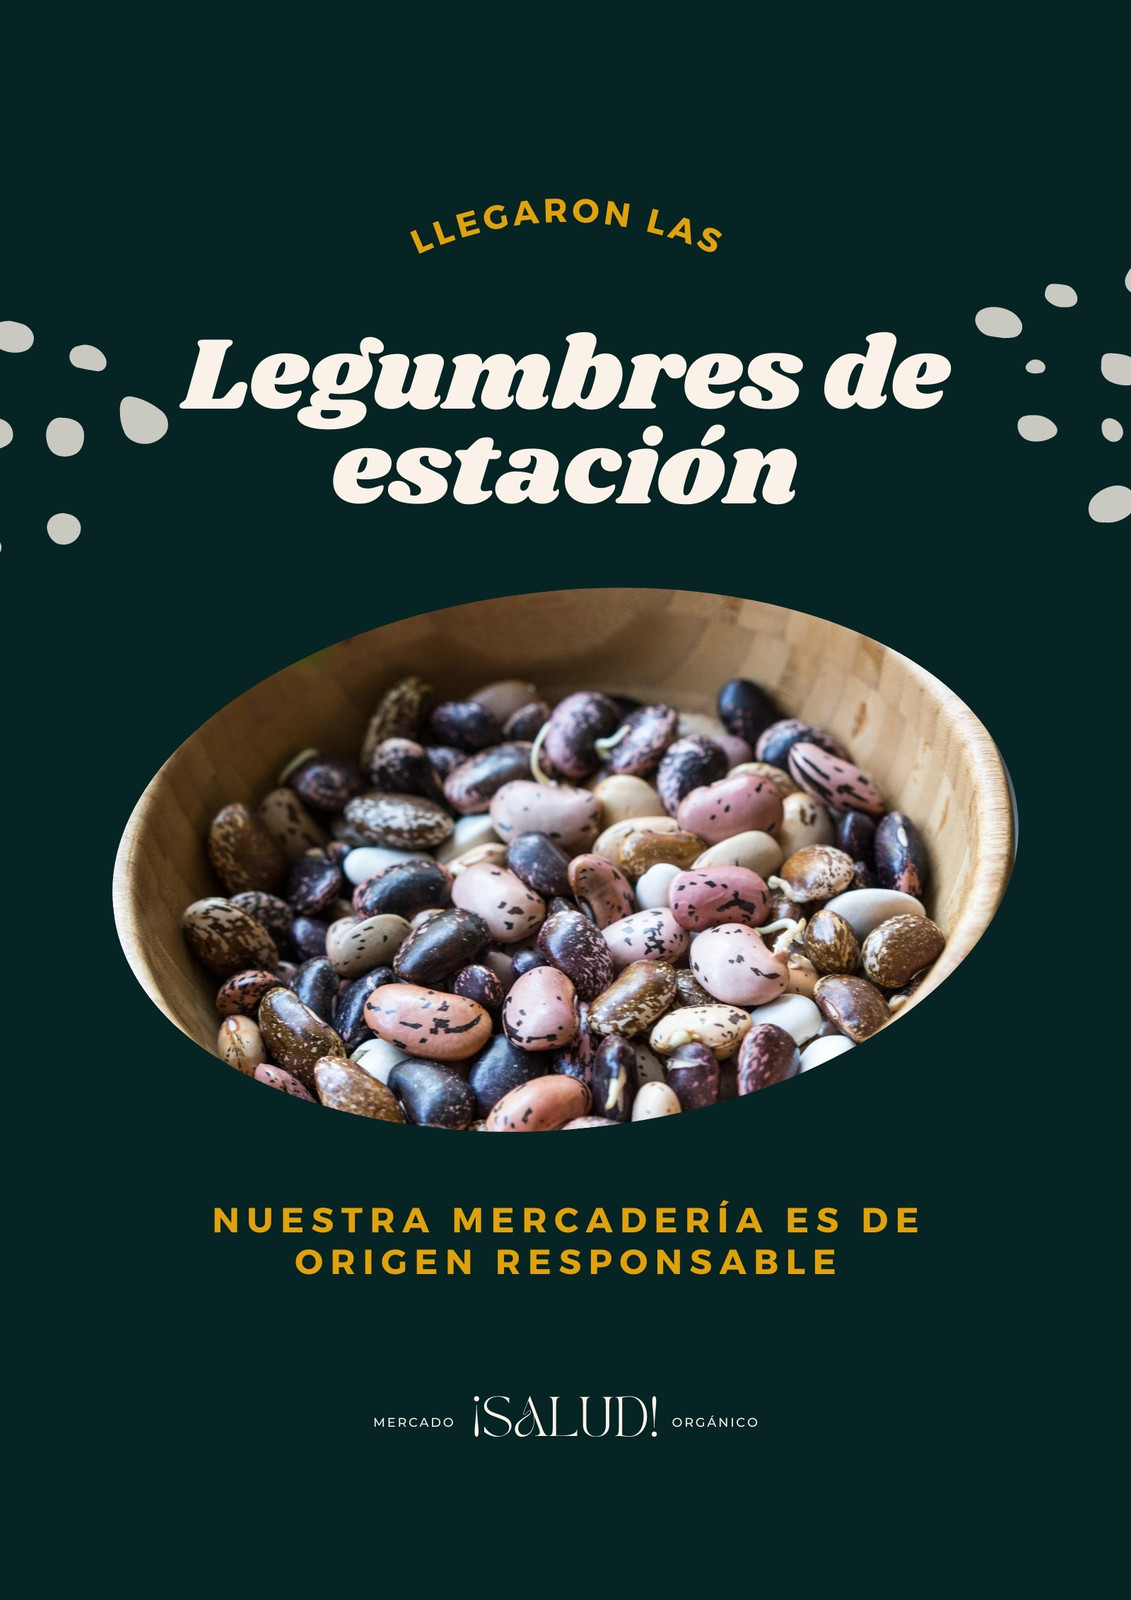 Flyer de diseño minimalista sobre anuncio de origen responsable en mercado orgánico, color verde azulado y blanco con foto de tazón de legumbres